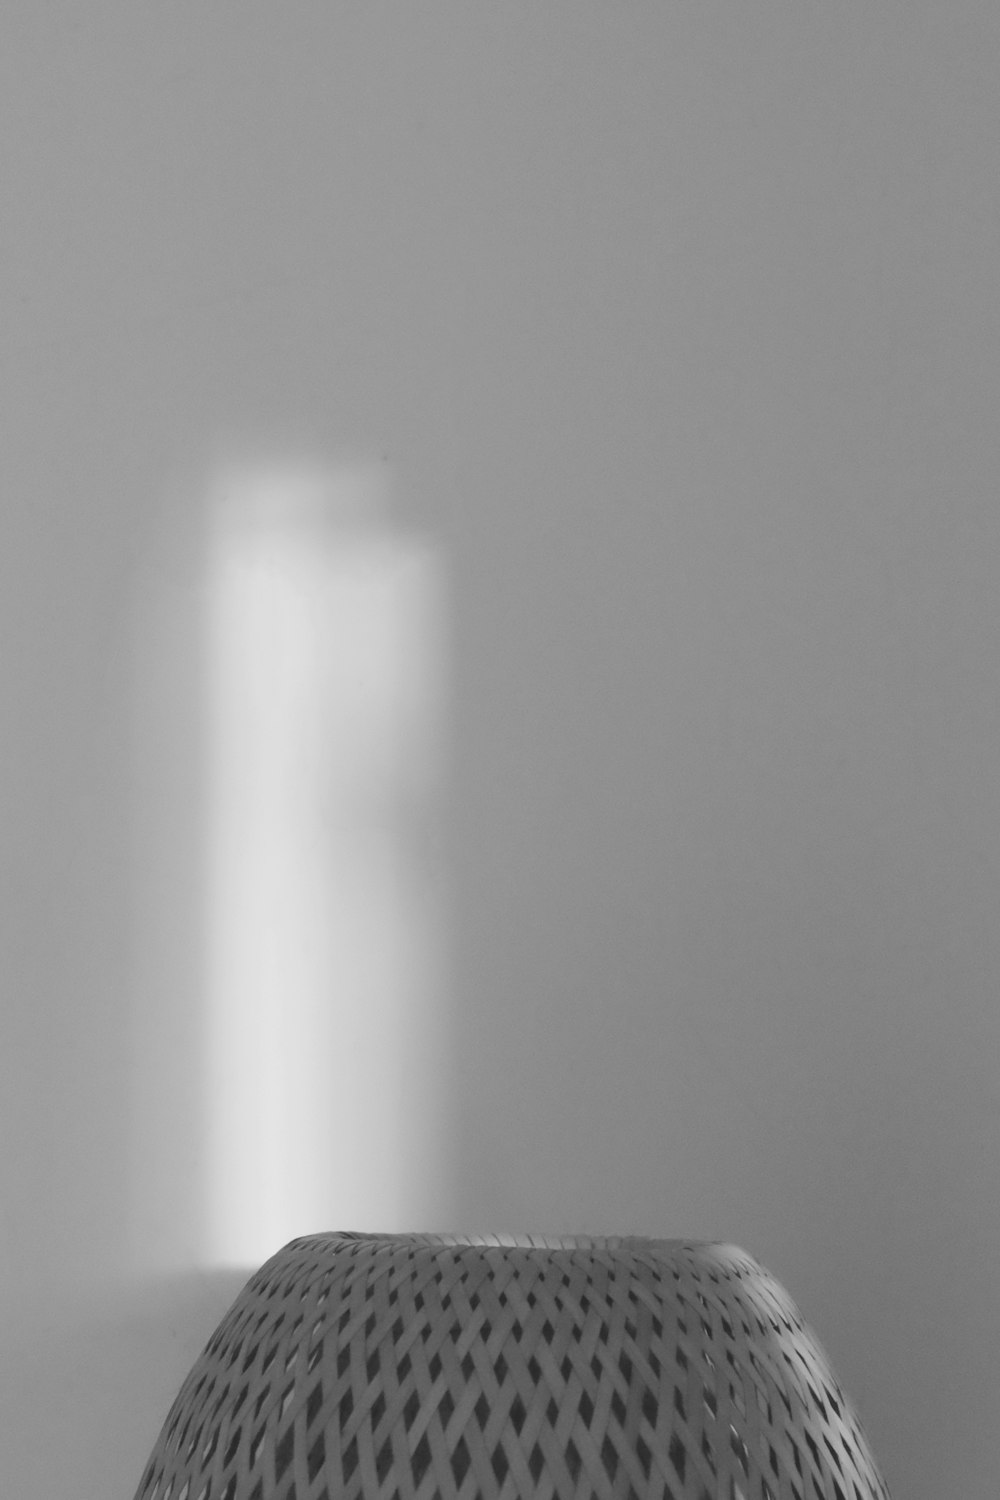 une photo en noir et blanc d’une lumière passant par une fenêtre